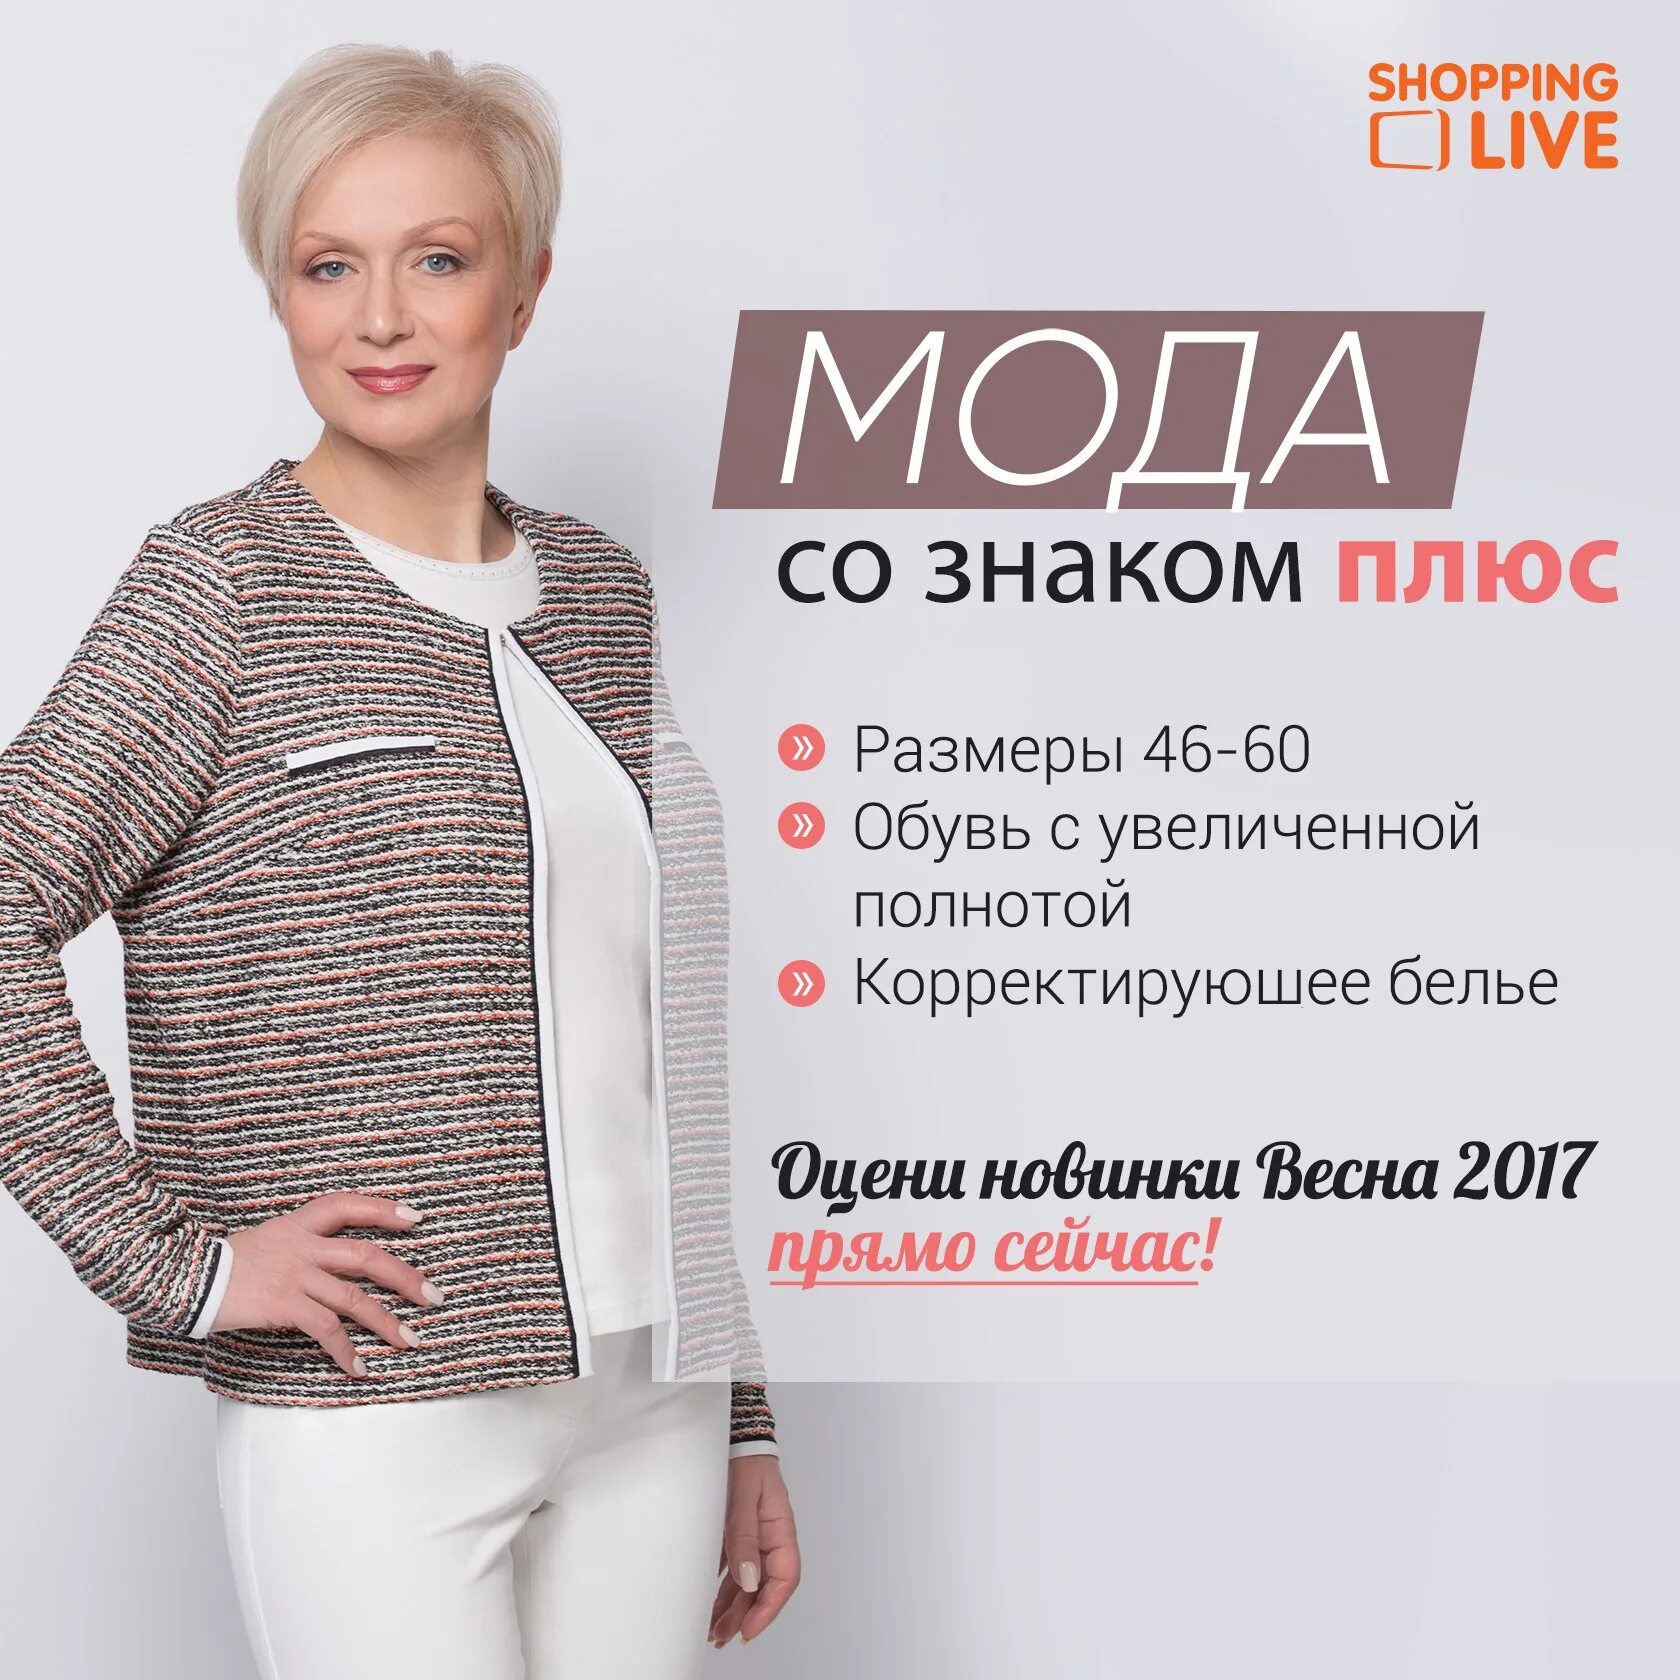 Шопенлайф. Shopping Live интернет-магазин. Shopping Live интернет магазин каталог. SHOPPINGLIVE.ru интернет магазин. Каталог одежды.